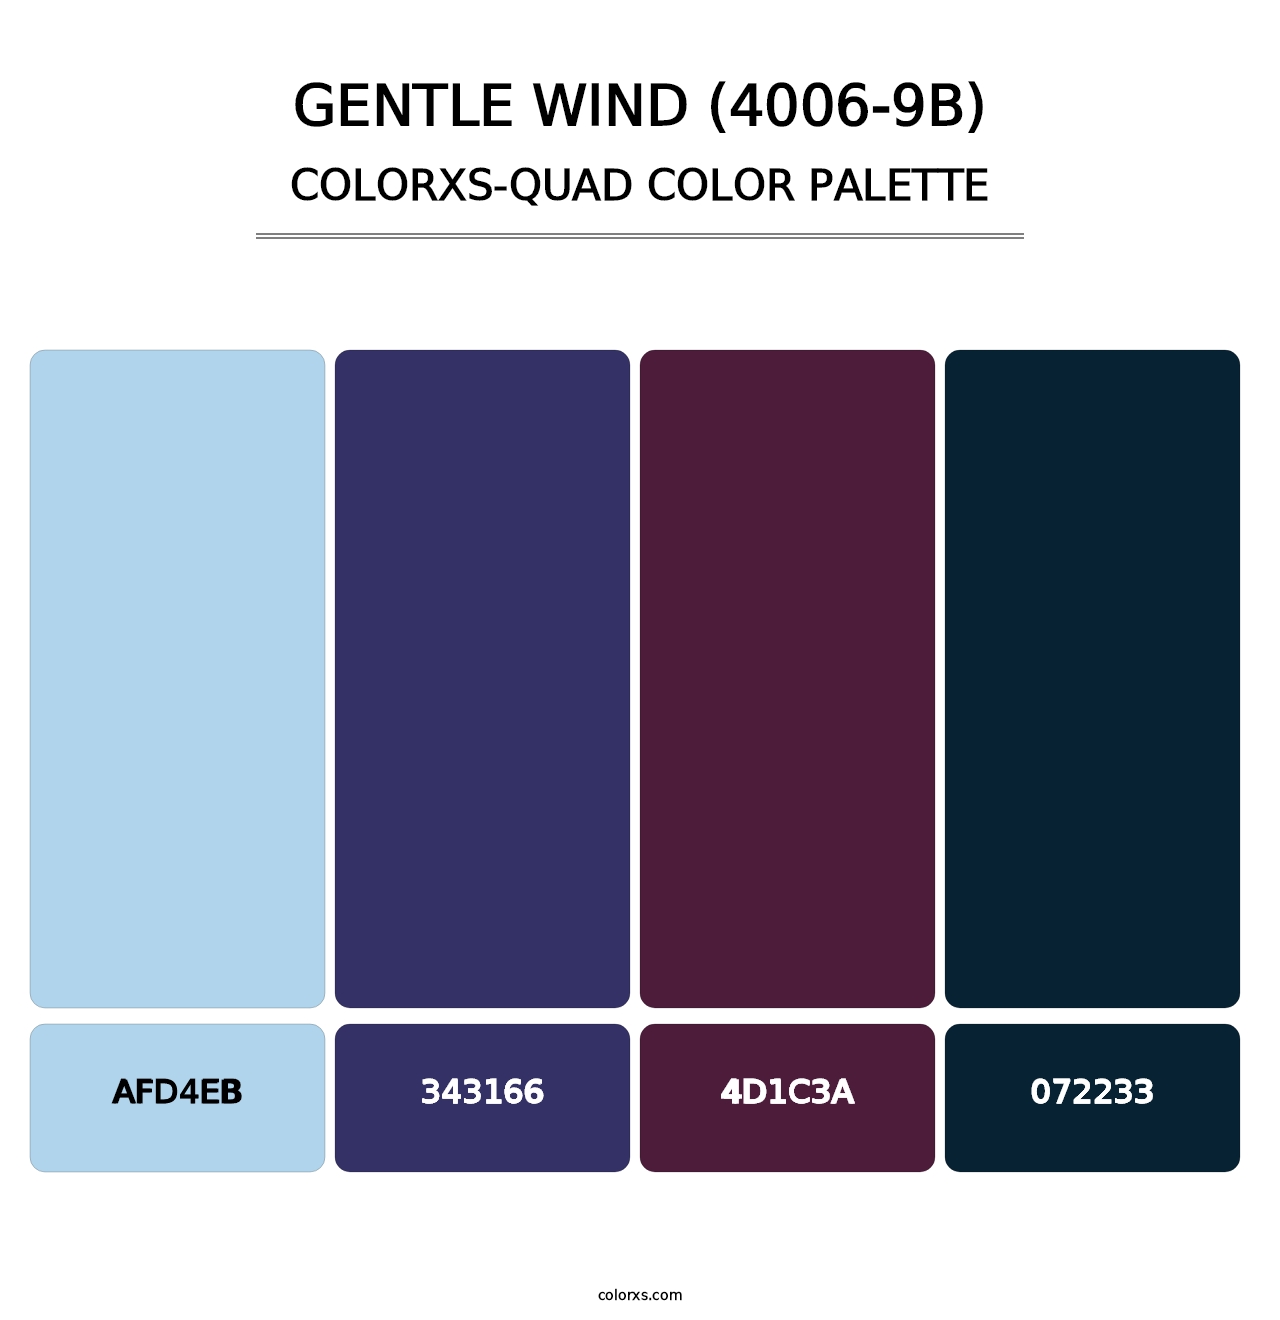 Gentle Wind (4006-9B) - Colorxs Quad Palette